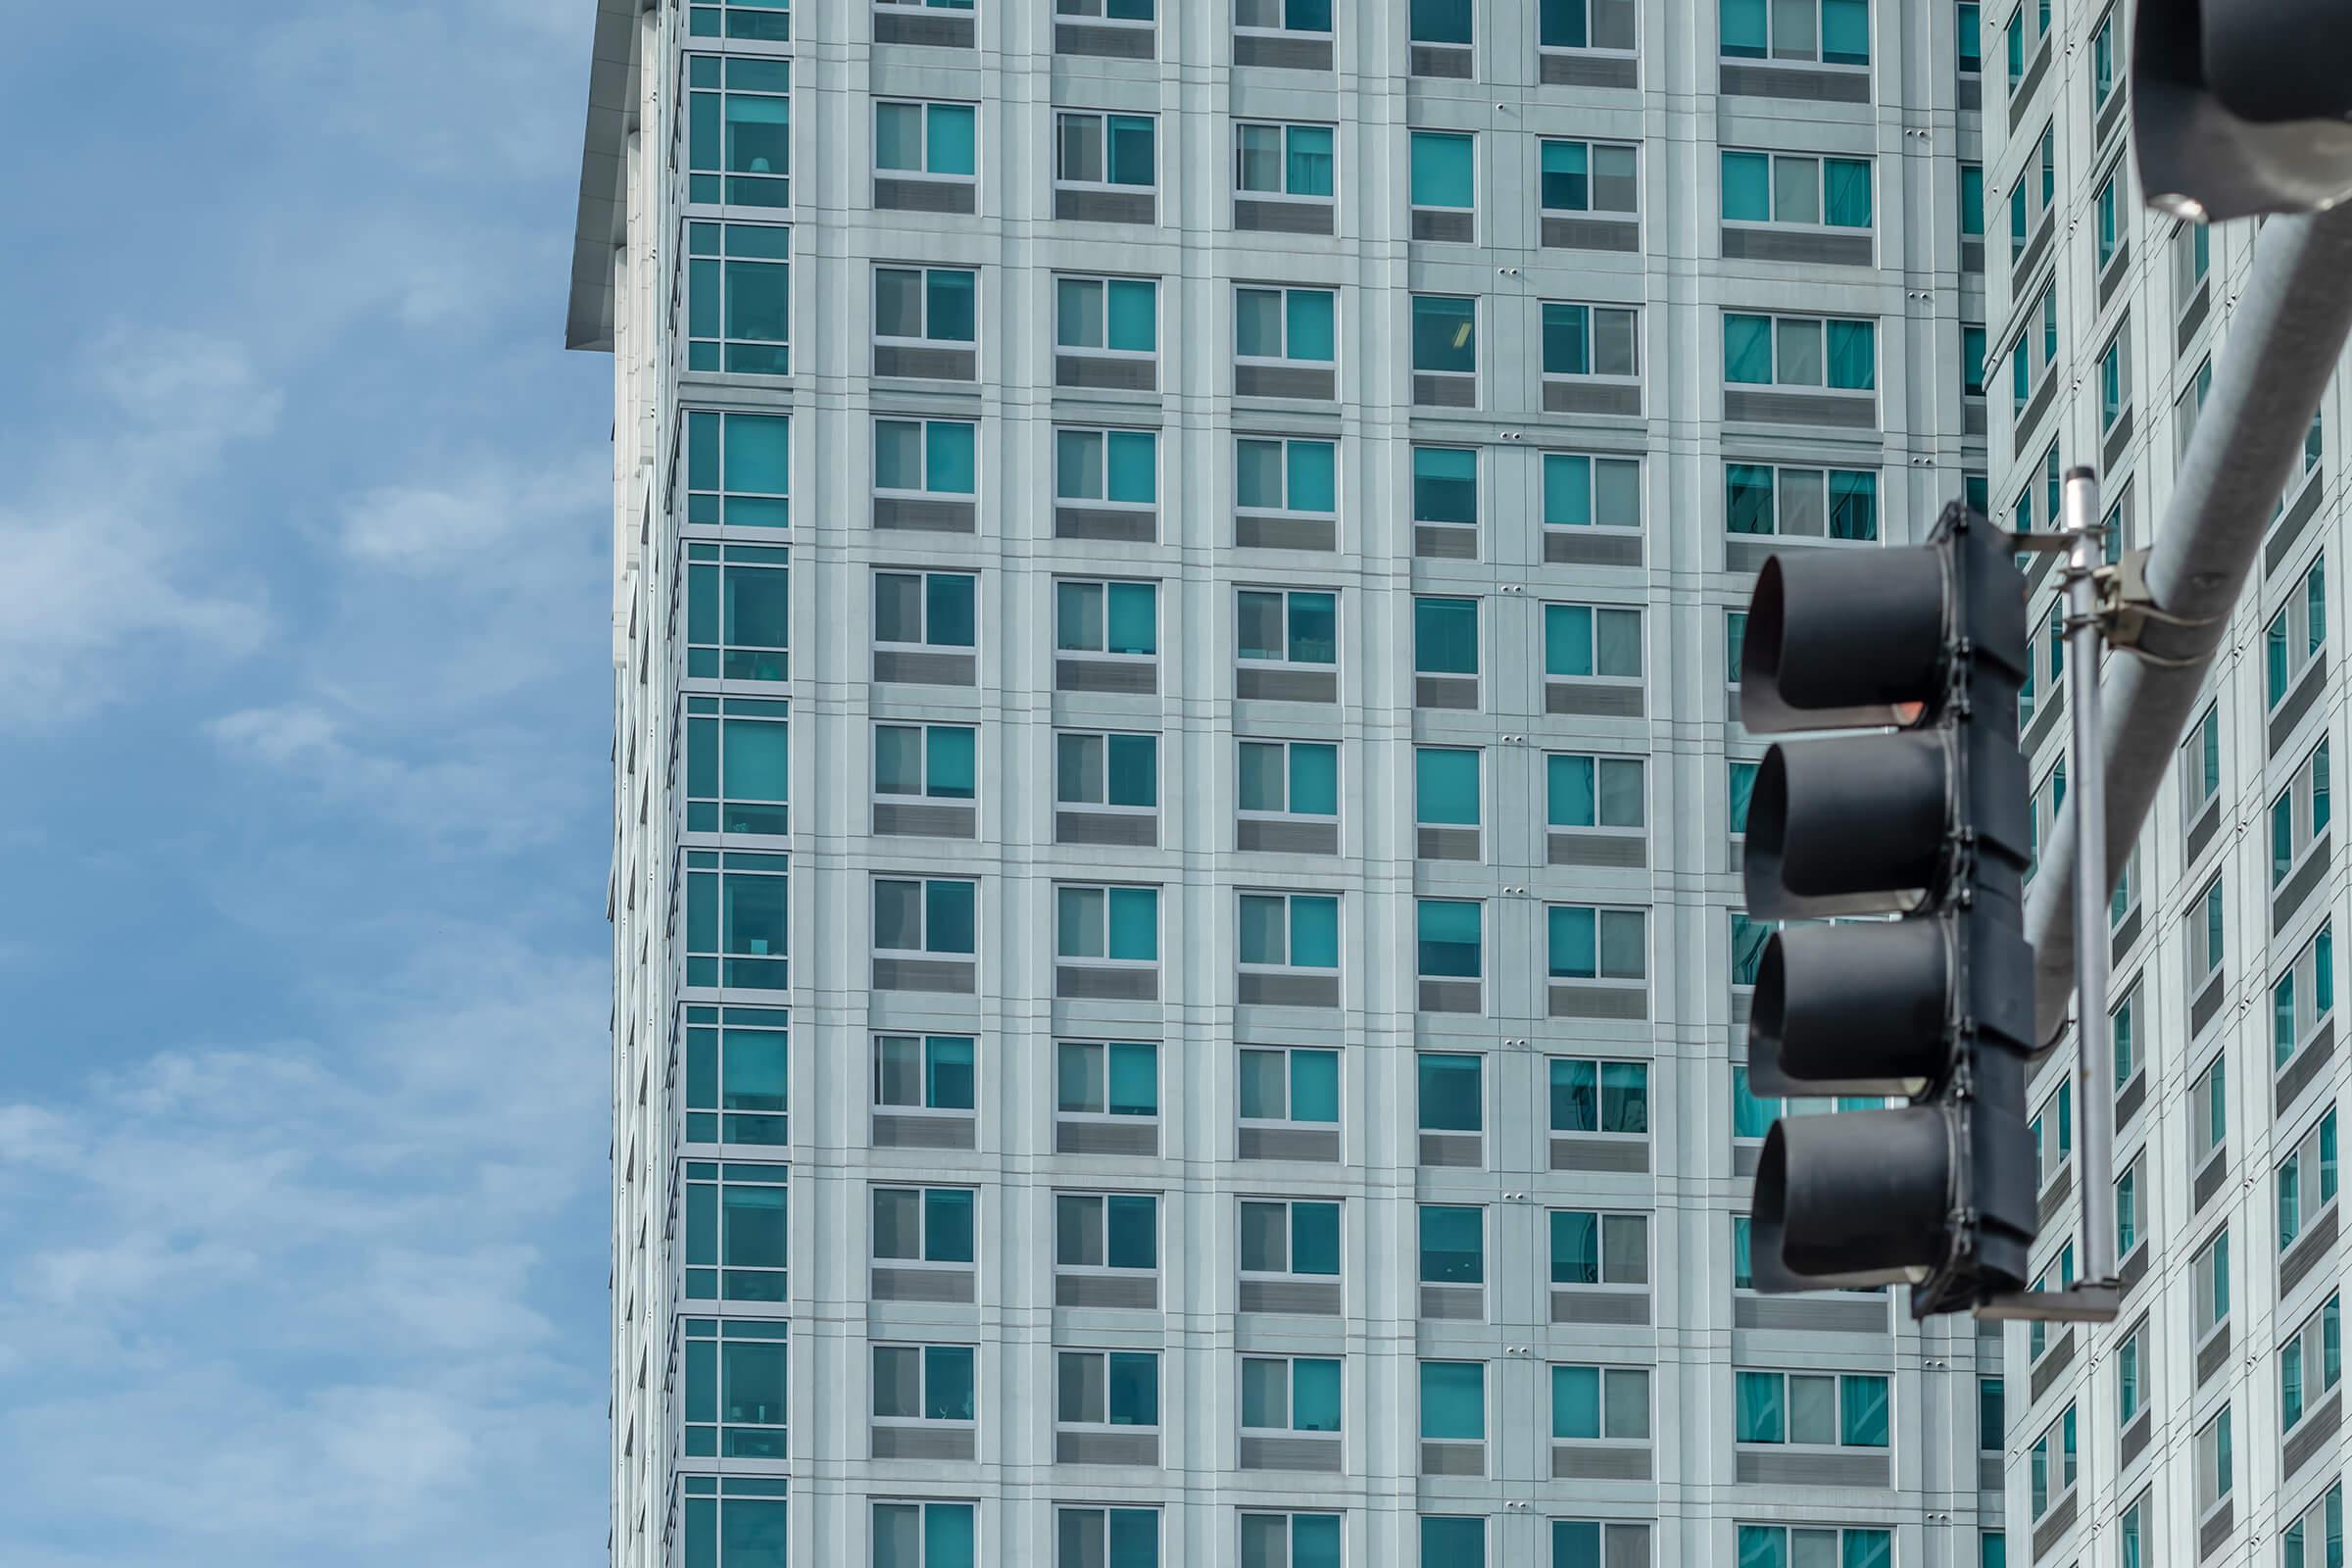 a traffic light sitting below a tall building